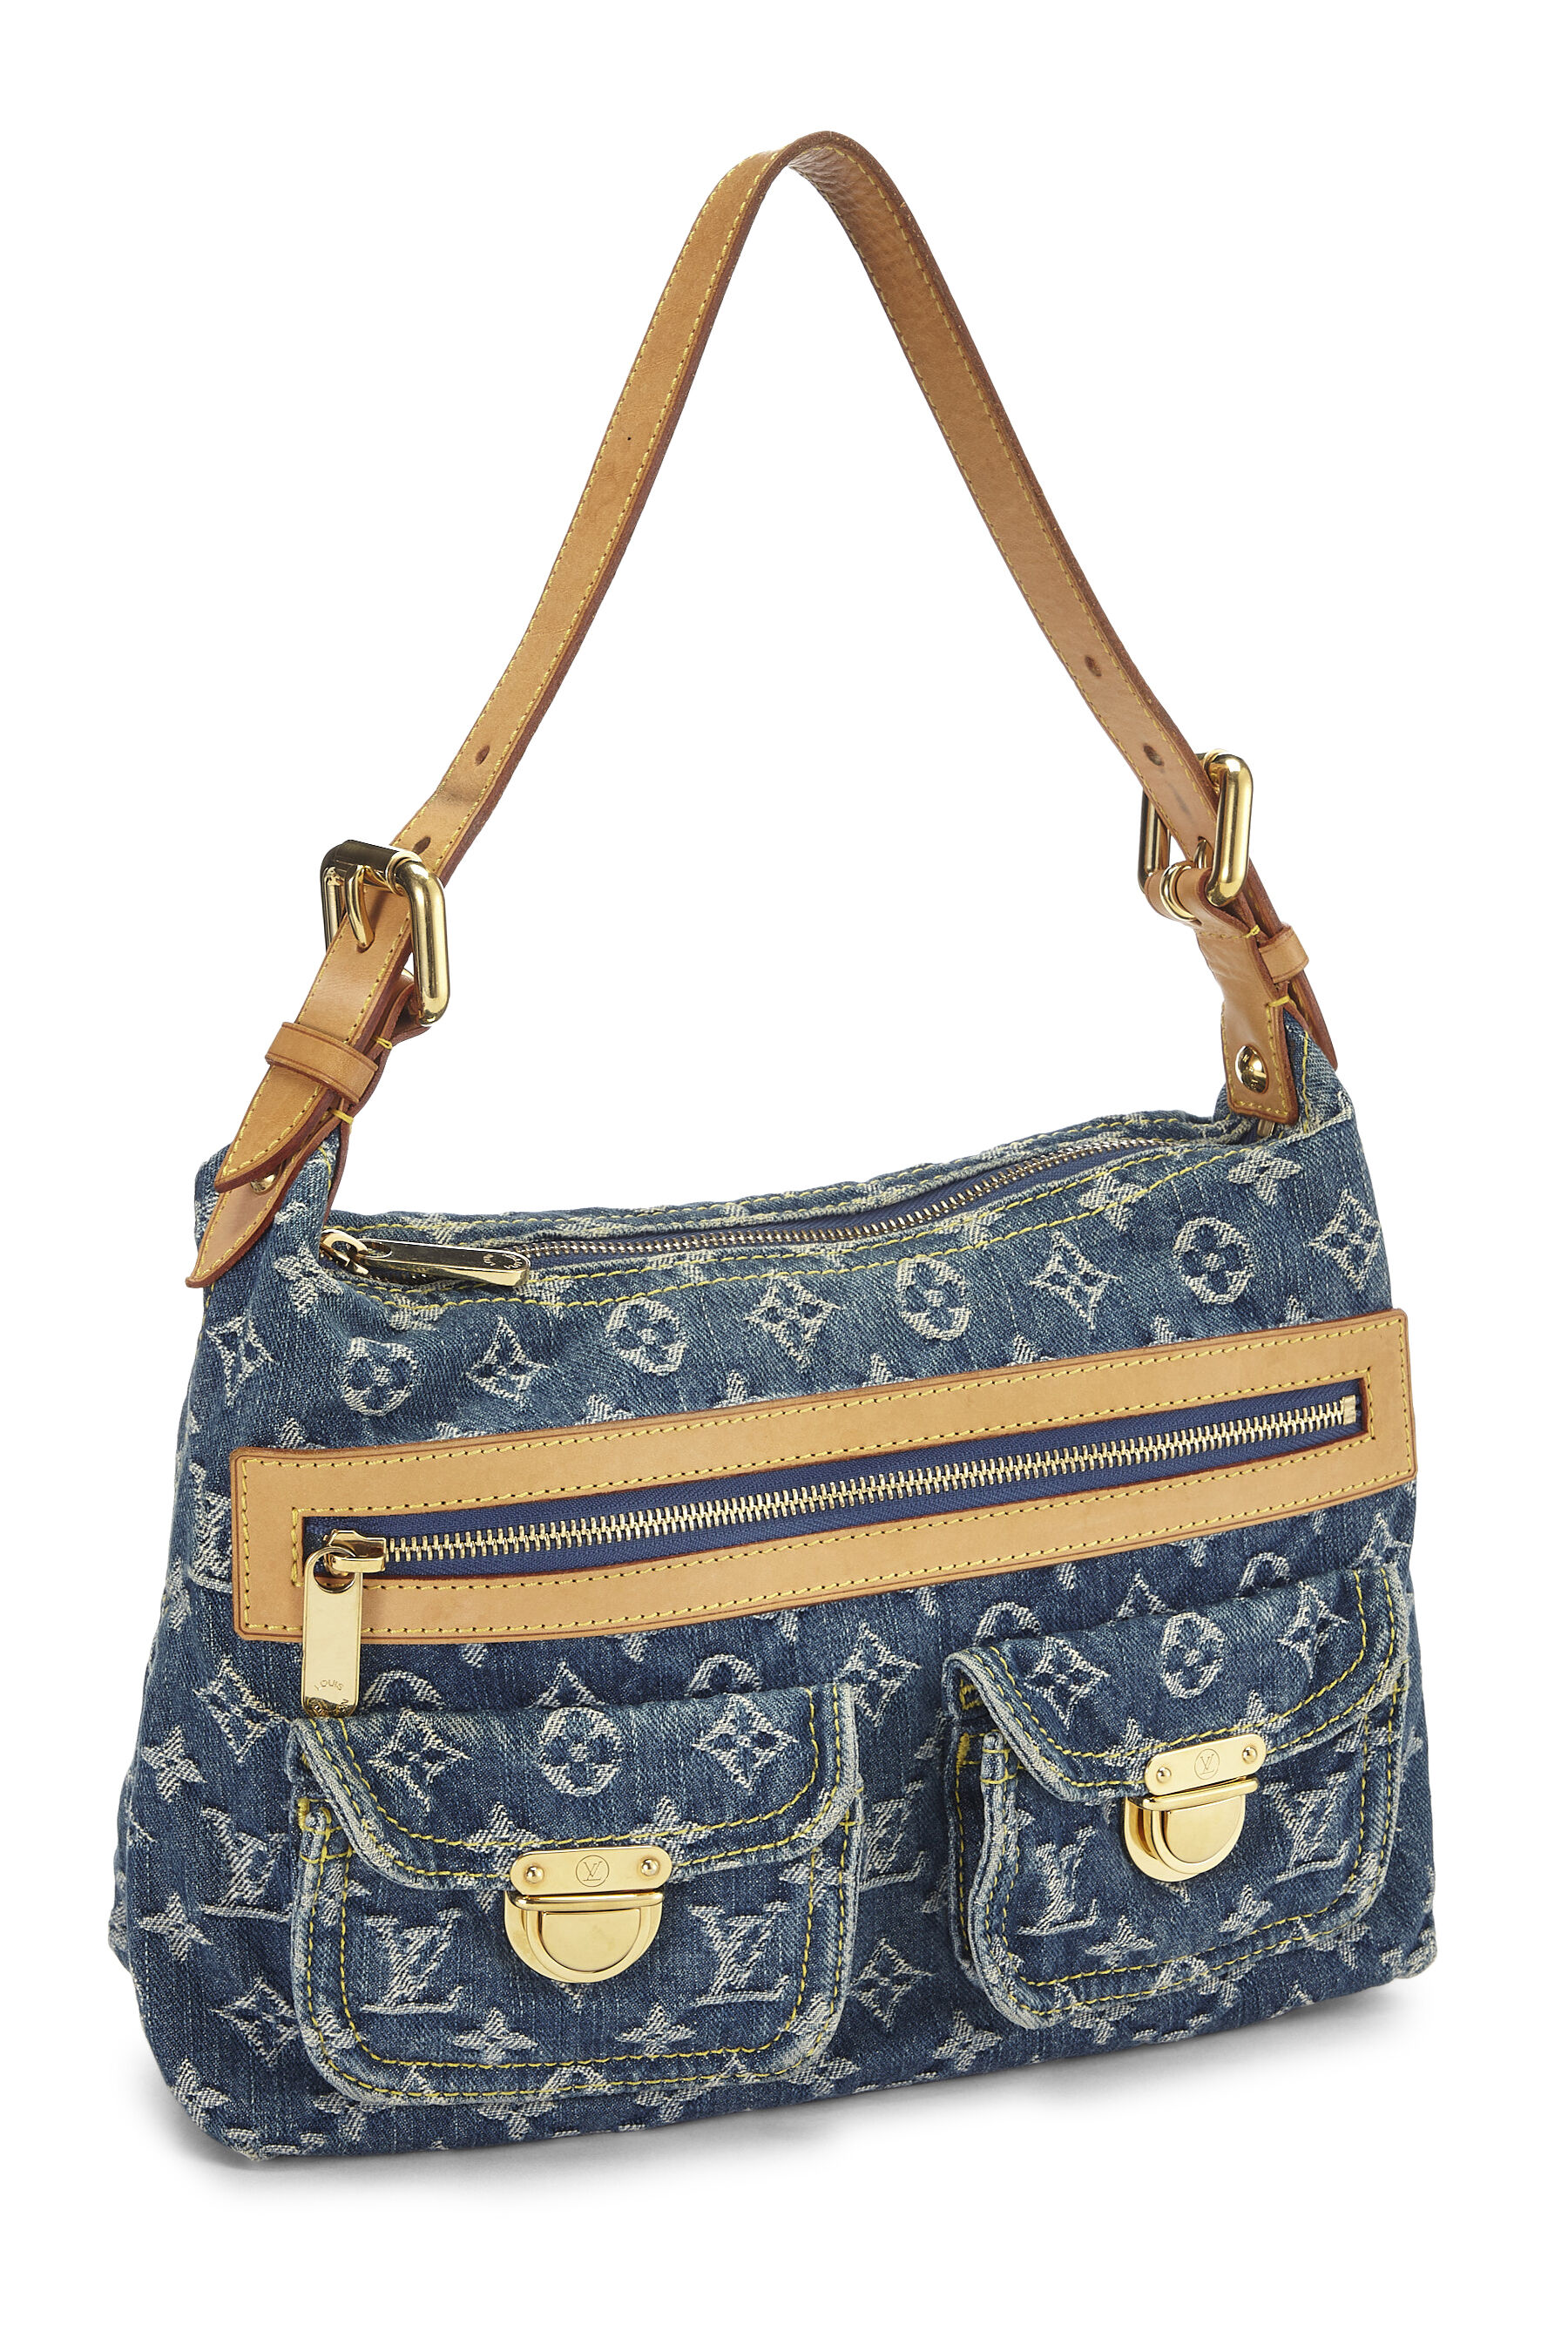 Louis Vuitton, Bags, Louis Vuitton Denim Baggy Pm Shoulder Bag